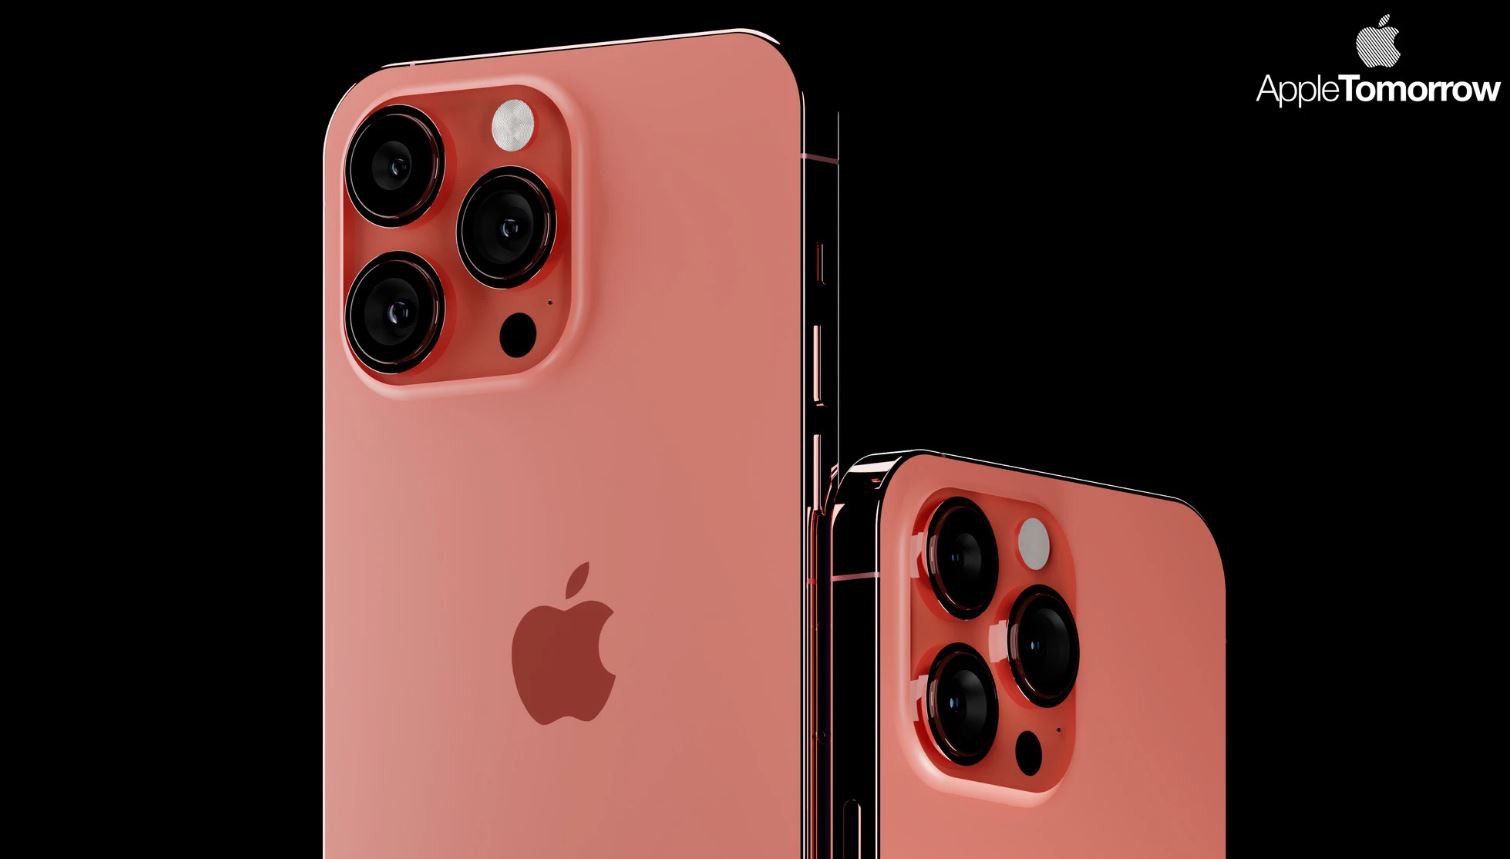 iPhone 14 màu hồng – Hãy để sự đơn giản và thanh lịch của sản phẩm này đưa bạn đến một cuộc sống hiện đại và tiện nghi. Với màu hồng trẻ trung và các tính năng cao cấp, iPhone 14 sẽ đáp ứng hầu hết nhu cầu của bạn với mức giá cả phù hợp. Hãy xem qua hình ảnh lôi cuốn của iPhone 14 màu hồng để khám phá thêm về chiếc điện thoại này nhé!